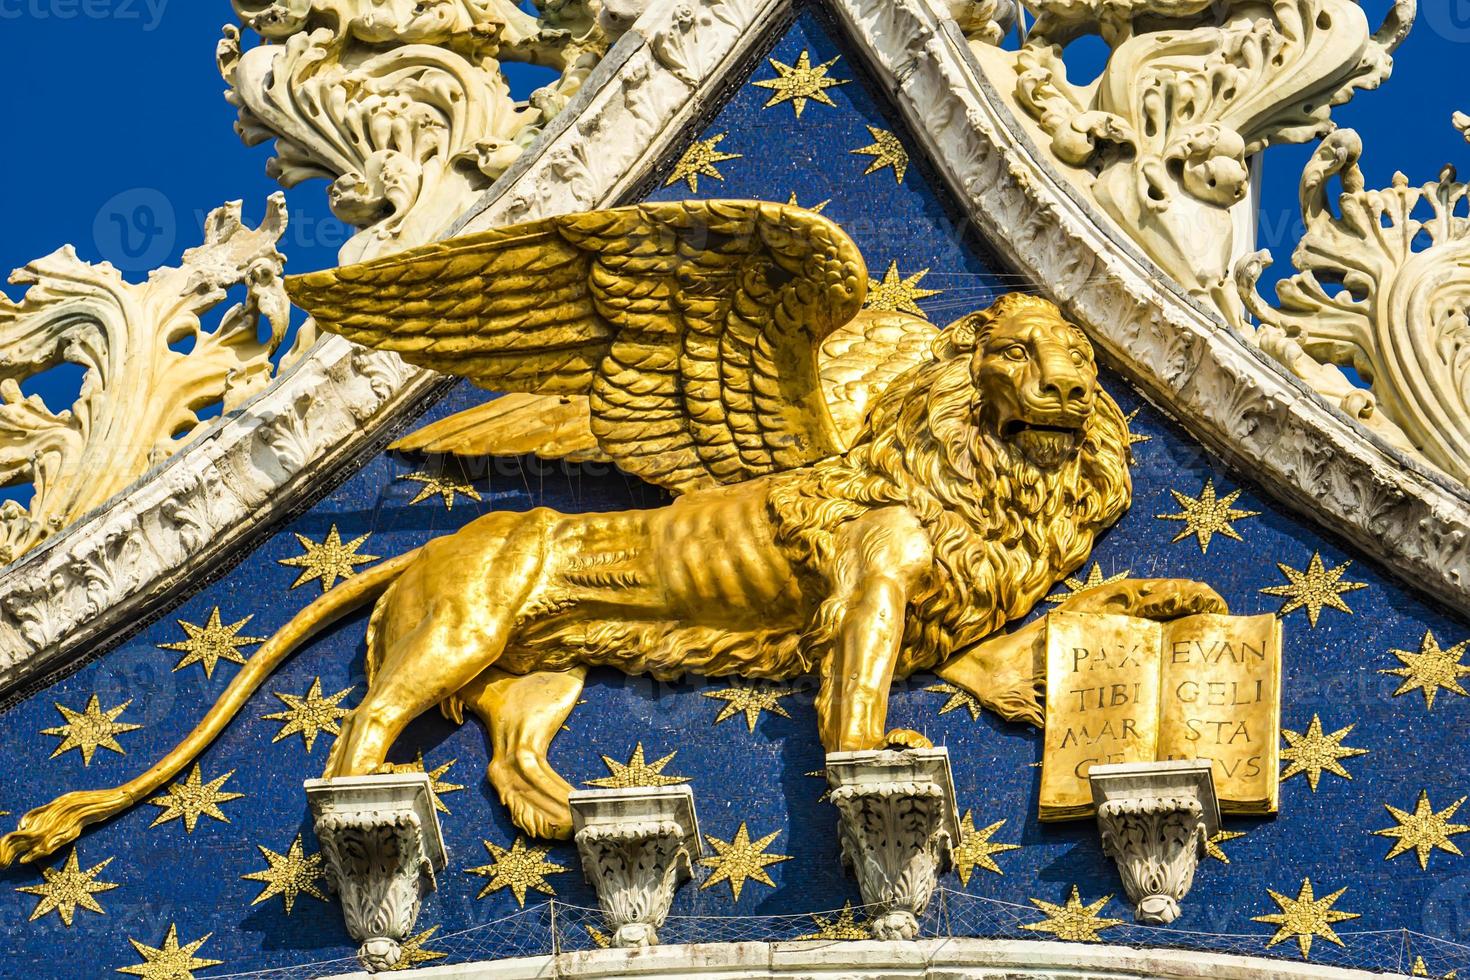 Símbolo Do Leão Da Serenissima Repubblica Que Significa Serena República De  Venice Em Itália Imagem de Stock - Imagem de george, veneza: 260728333